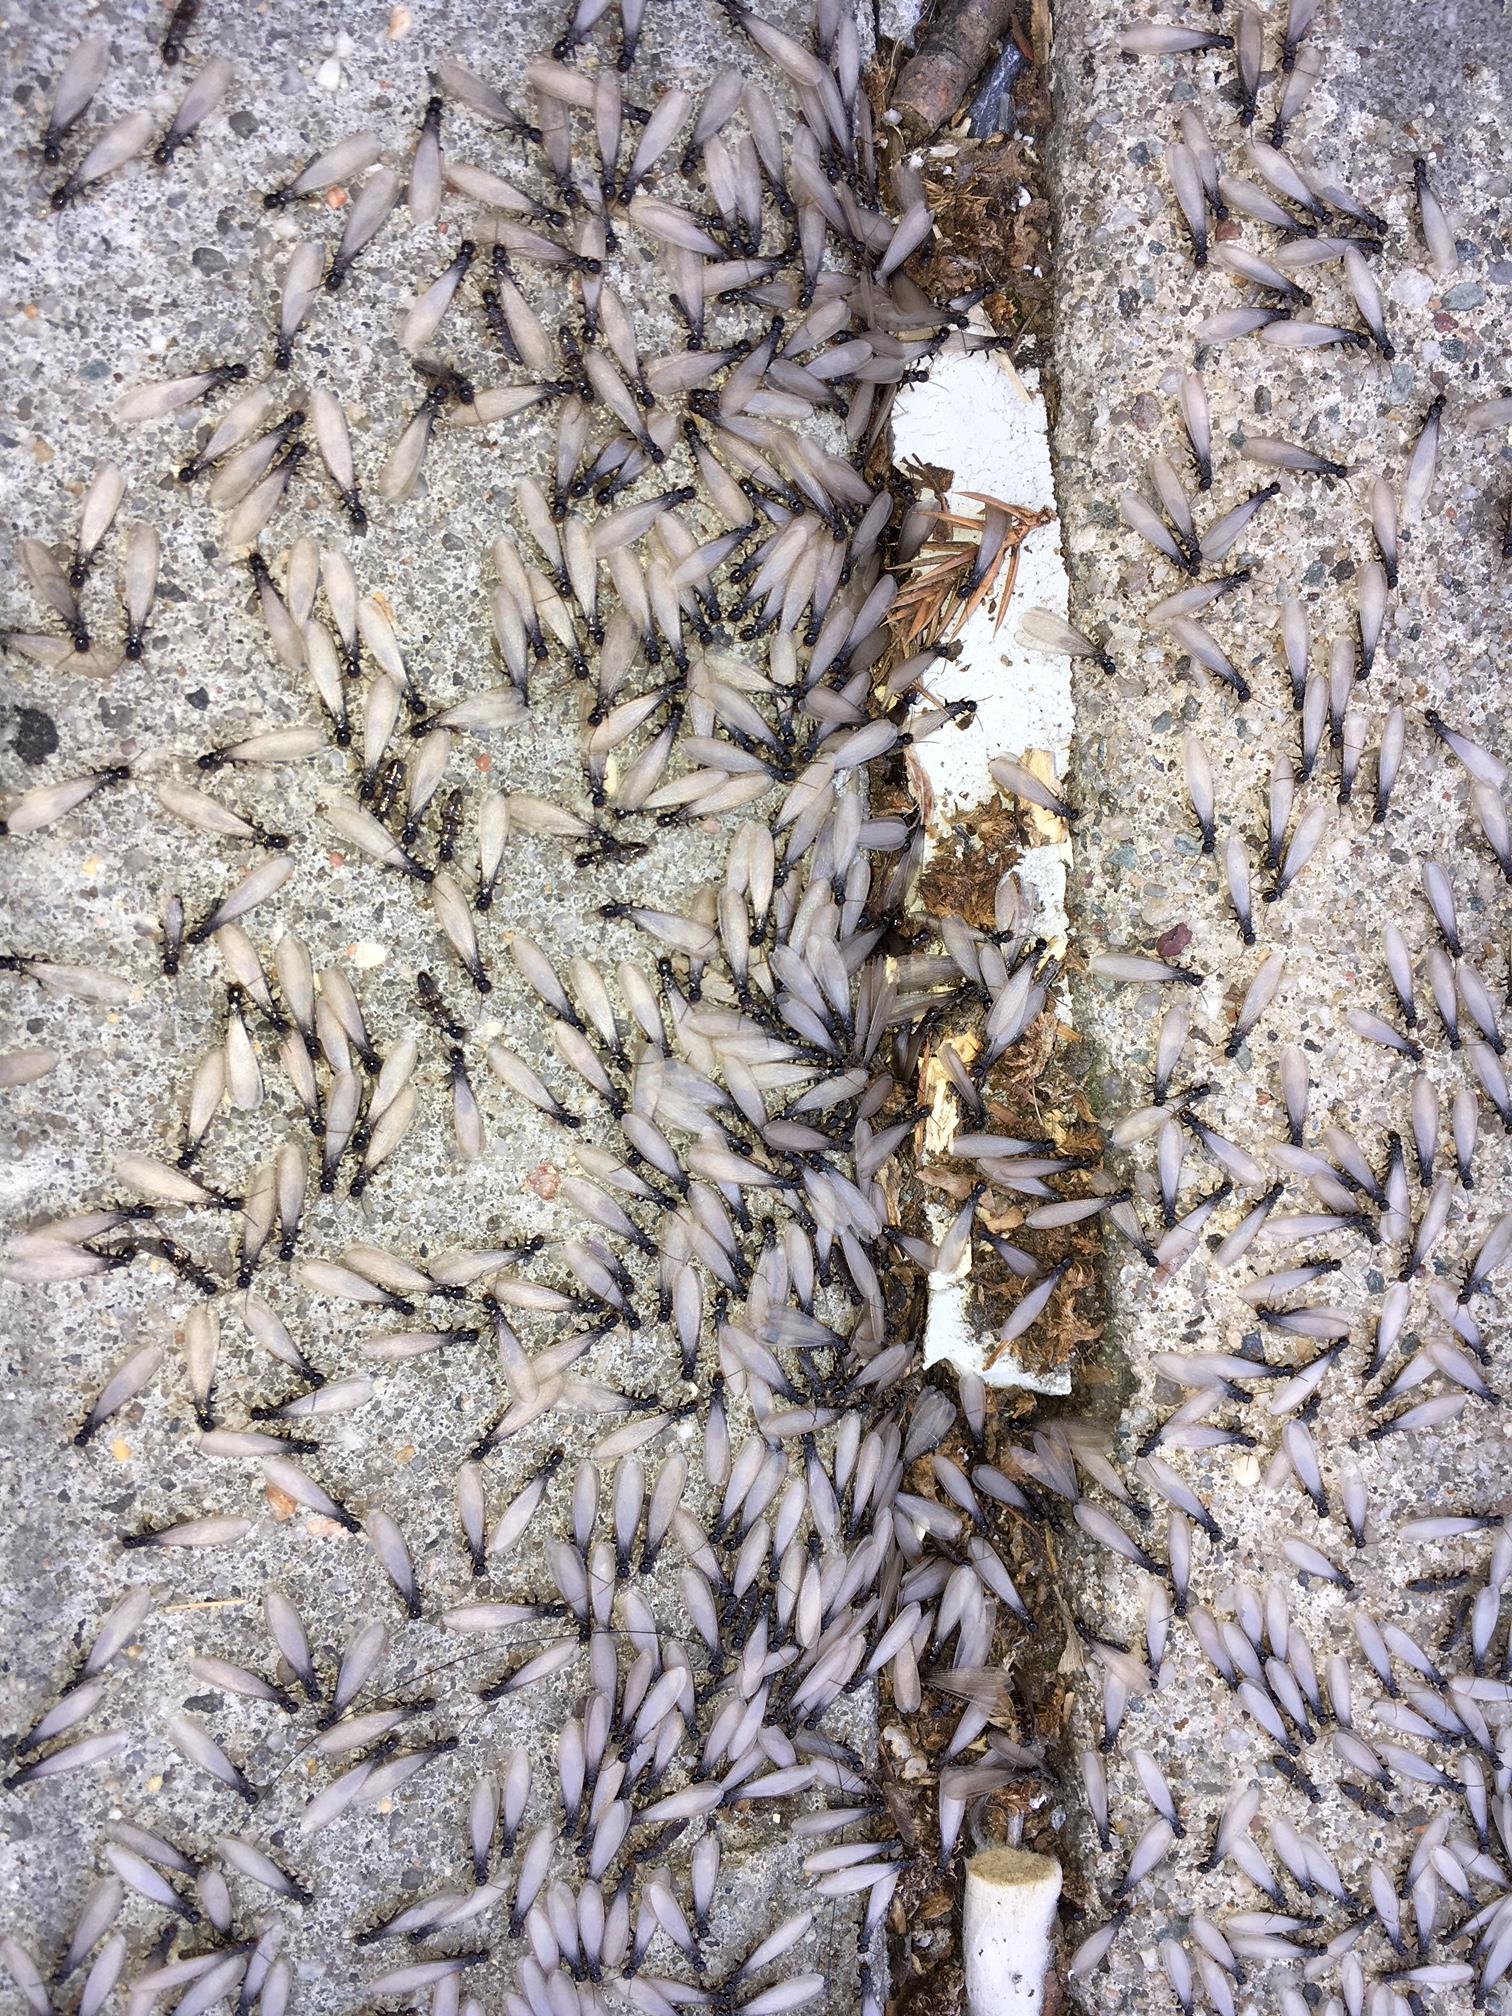 termites swarming on the ground